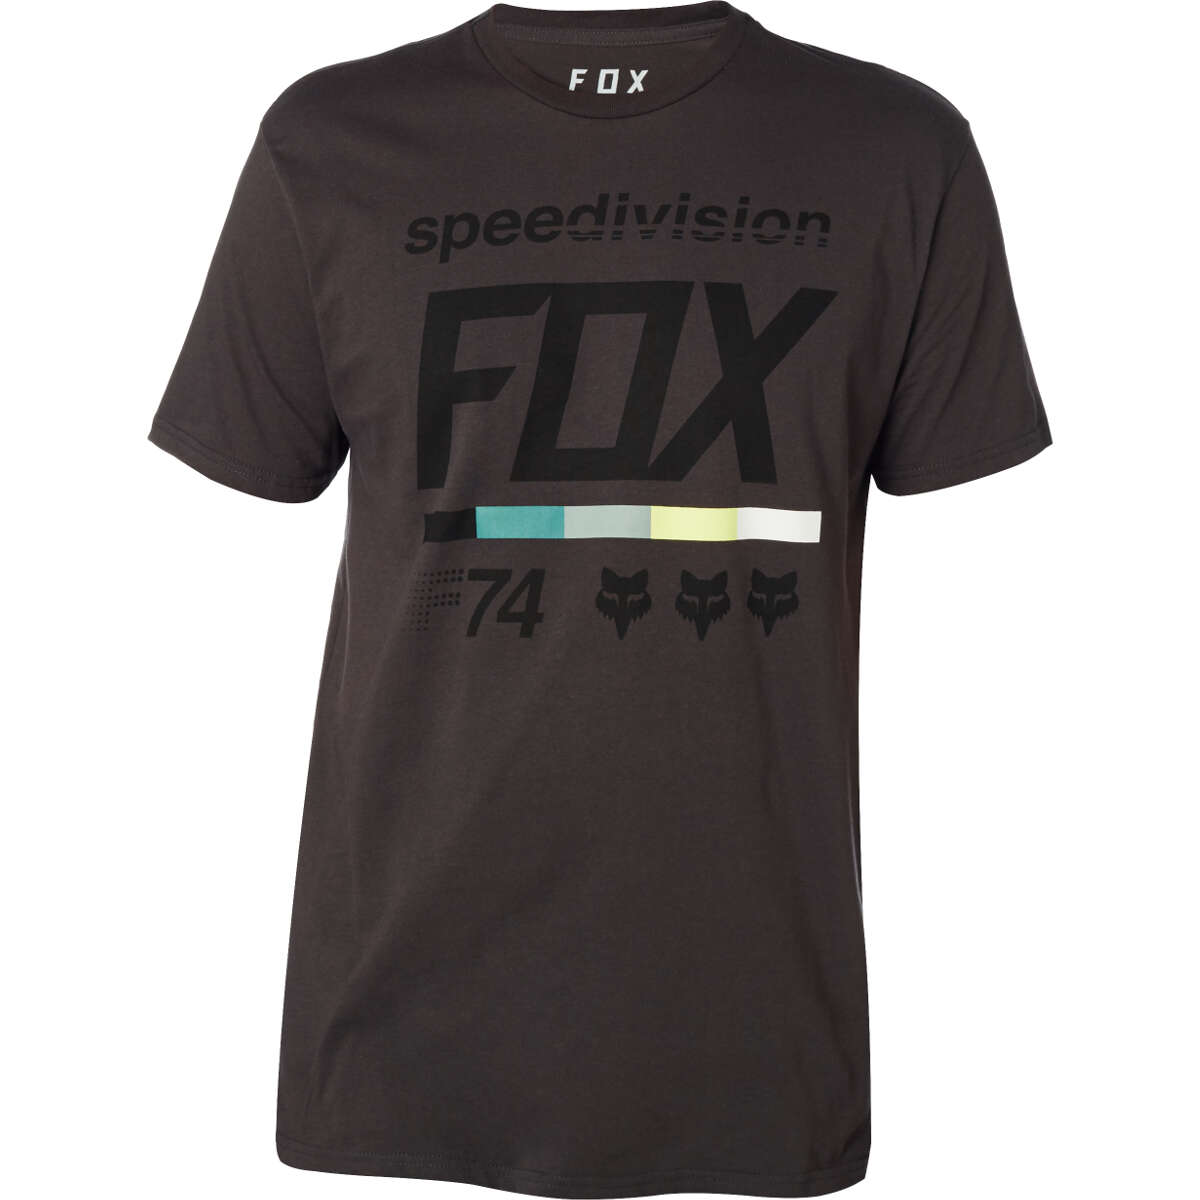 Fox T-Shirt Draftr 2 Black Vintage